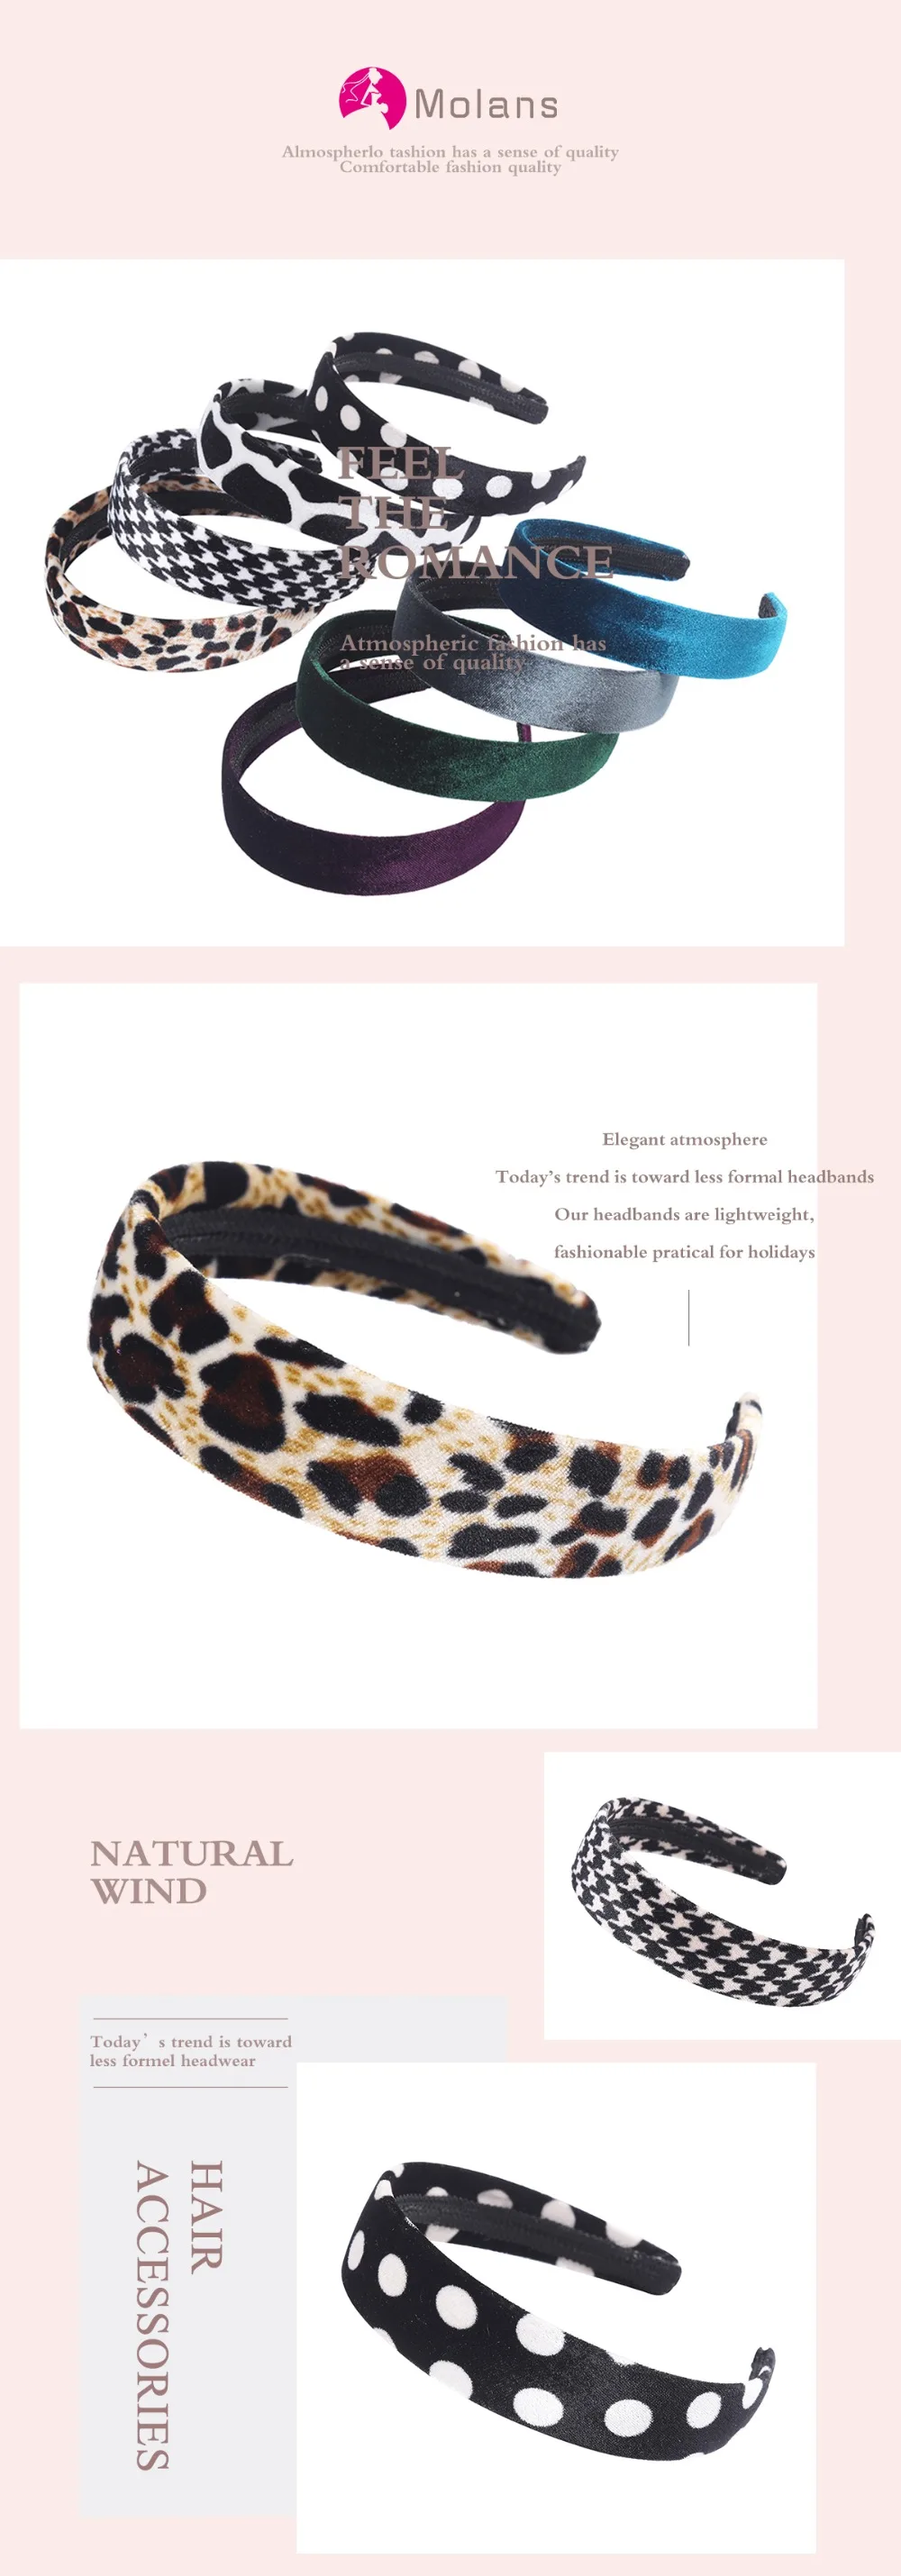 Molans новые леопардовые бархатные повязки на волосы, модные повязки на голову в горошек с леопардовым принтом и геометрическим рисунком для женщин, мягкие тонкие широкие повязки на голову